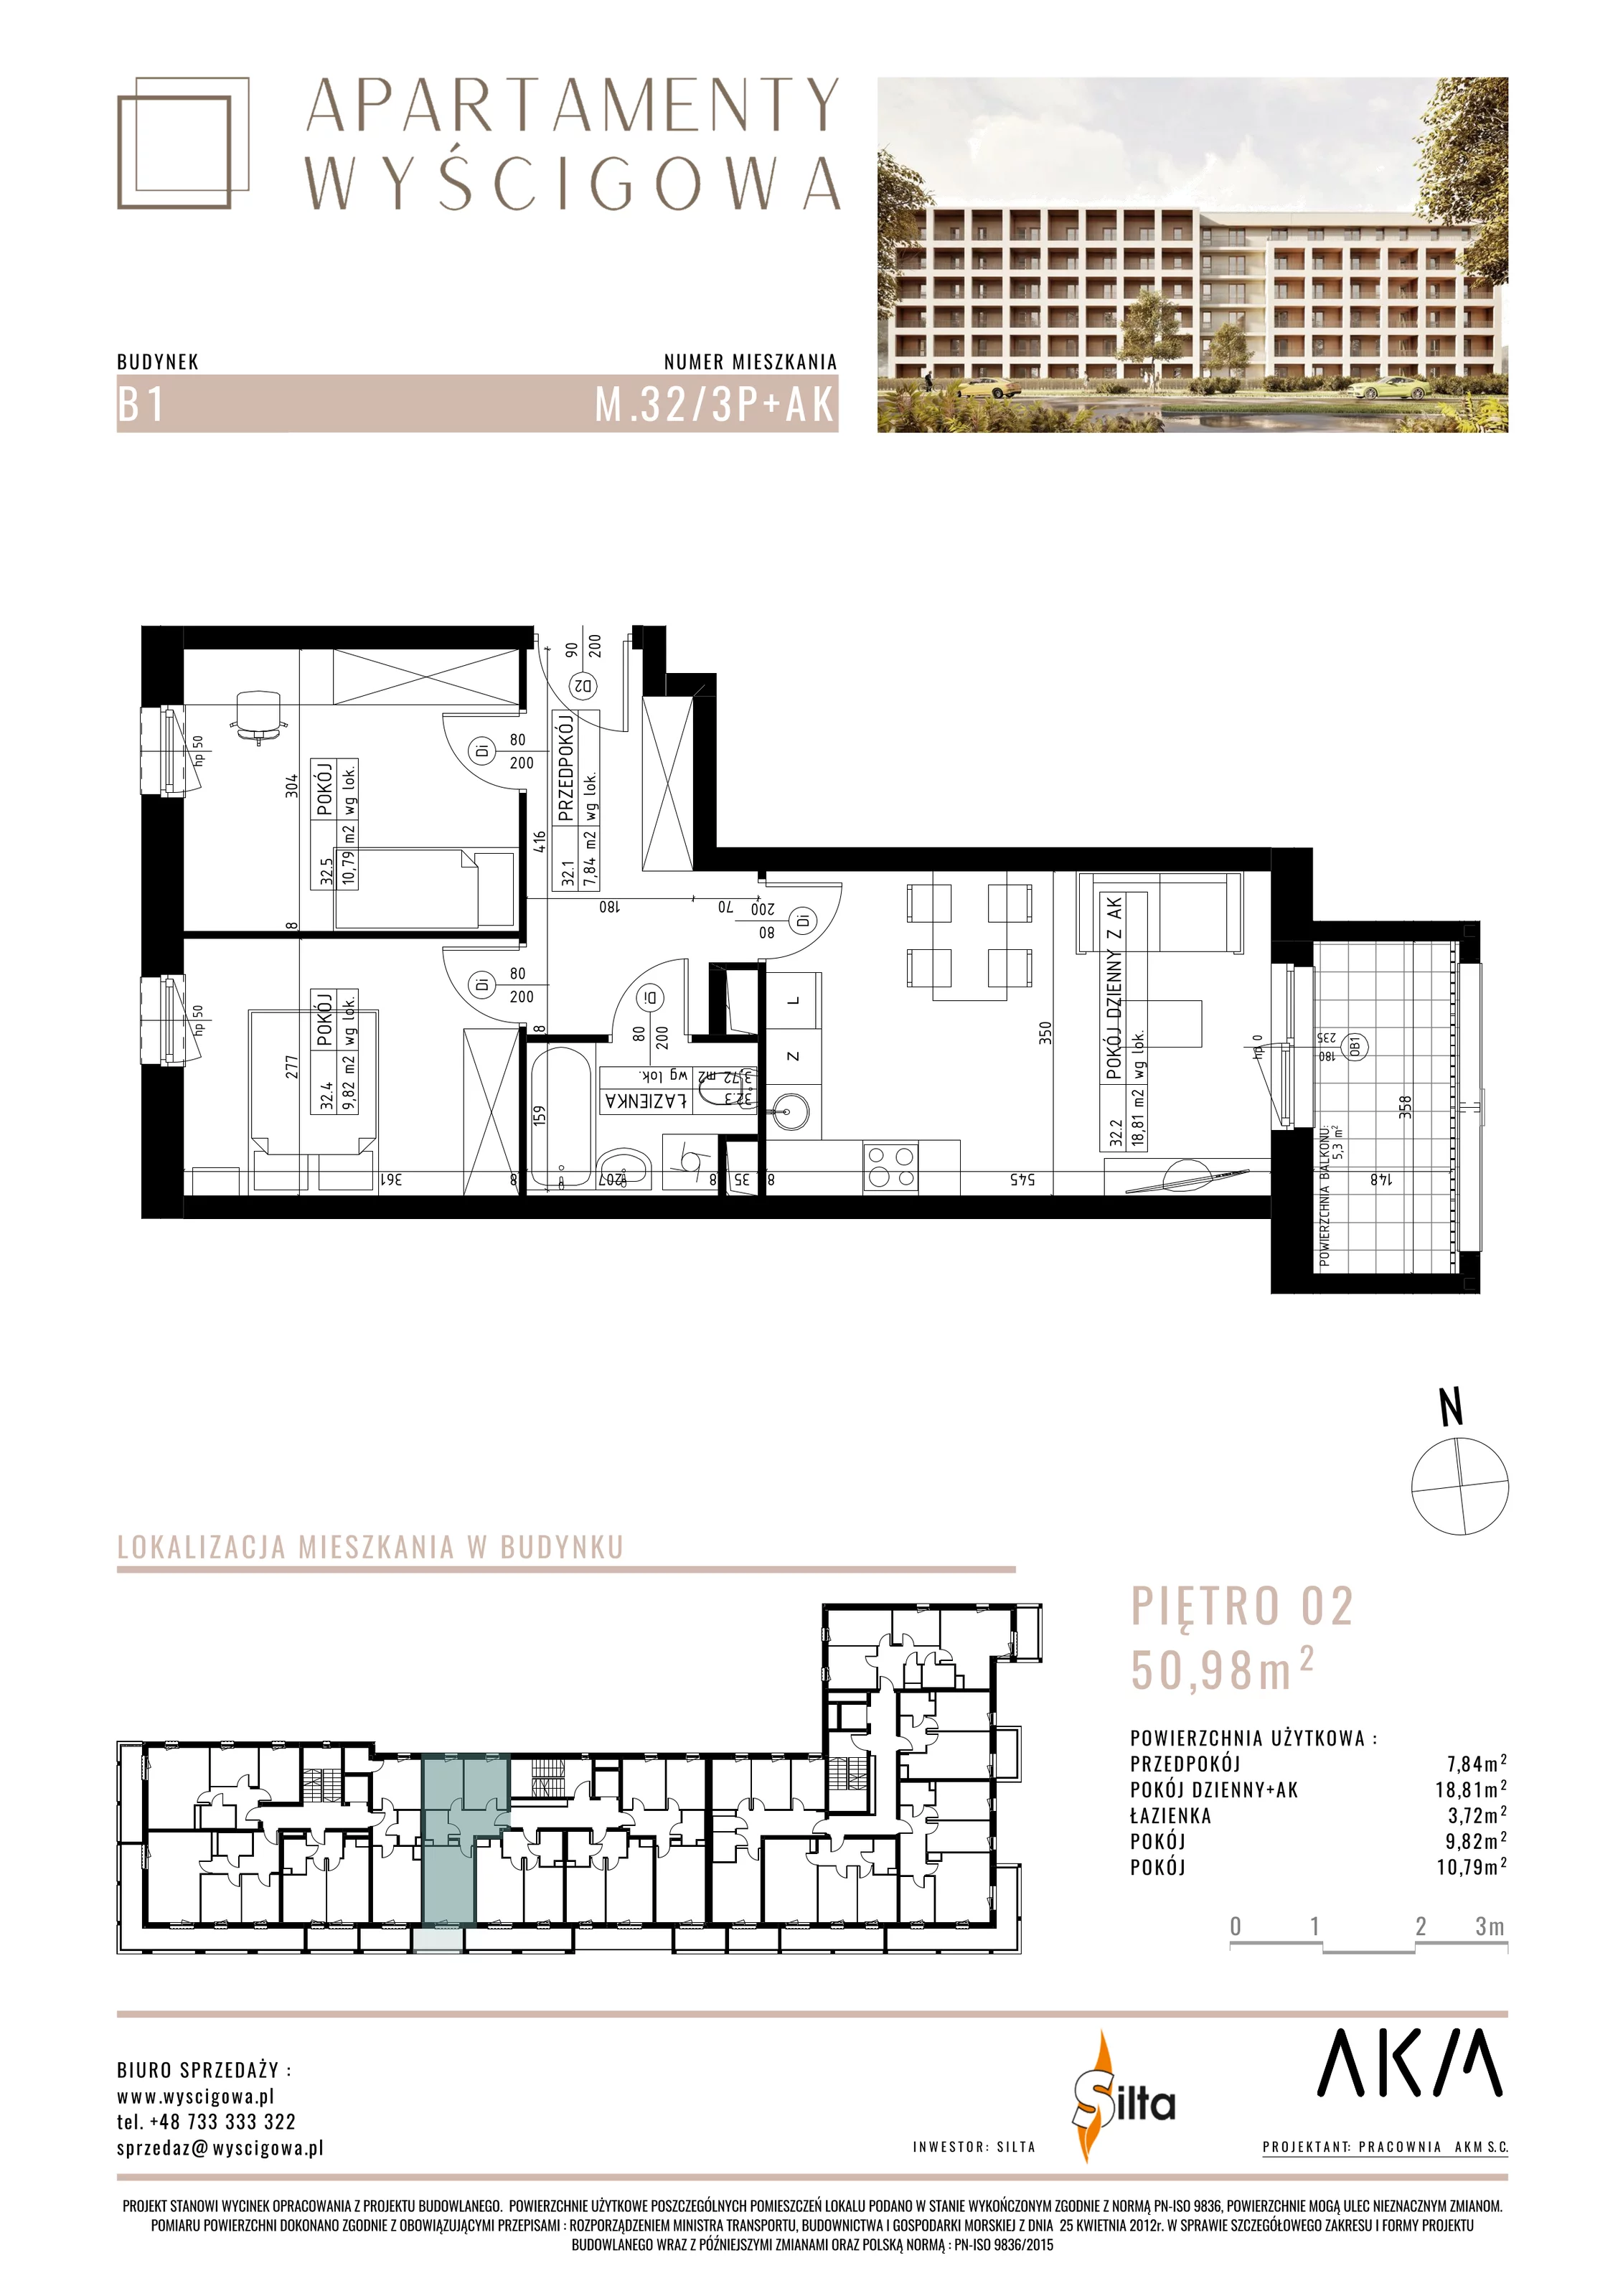 Mieszkanie 50,98 m², piętro 2, oferta nr B1.M32, Apartamenty Wyścigowa, Lublin, Dziesiąta, Dziesiąta, ul. Wyścigowa